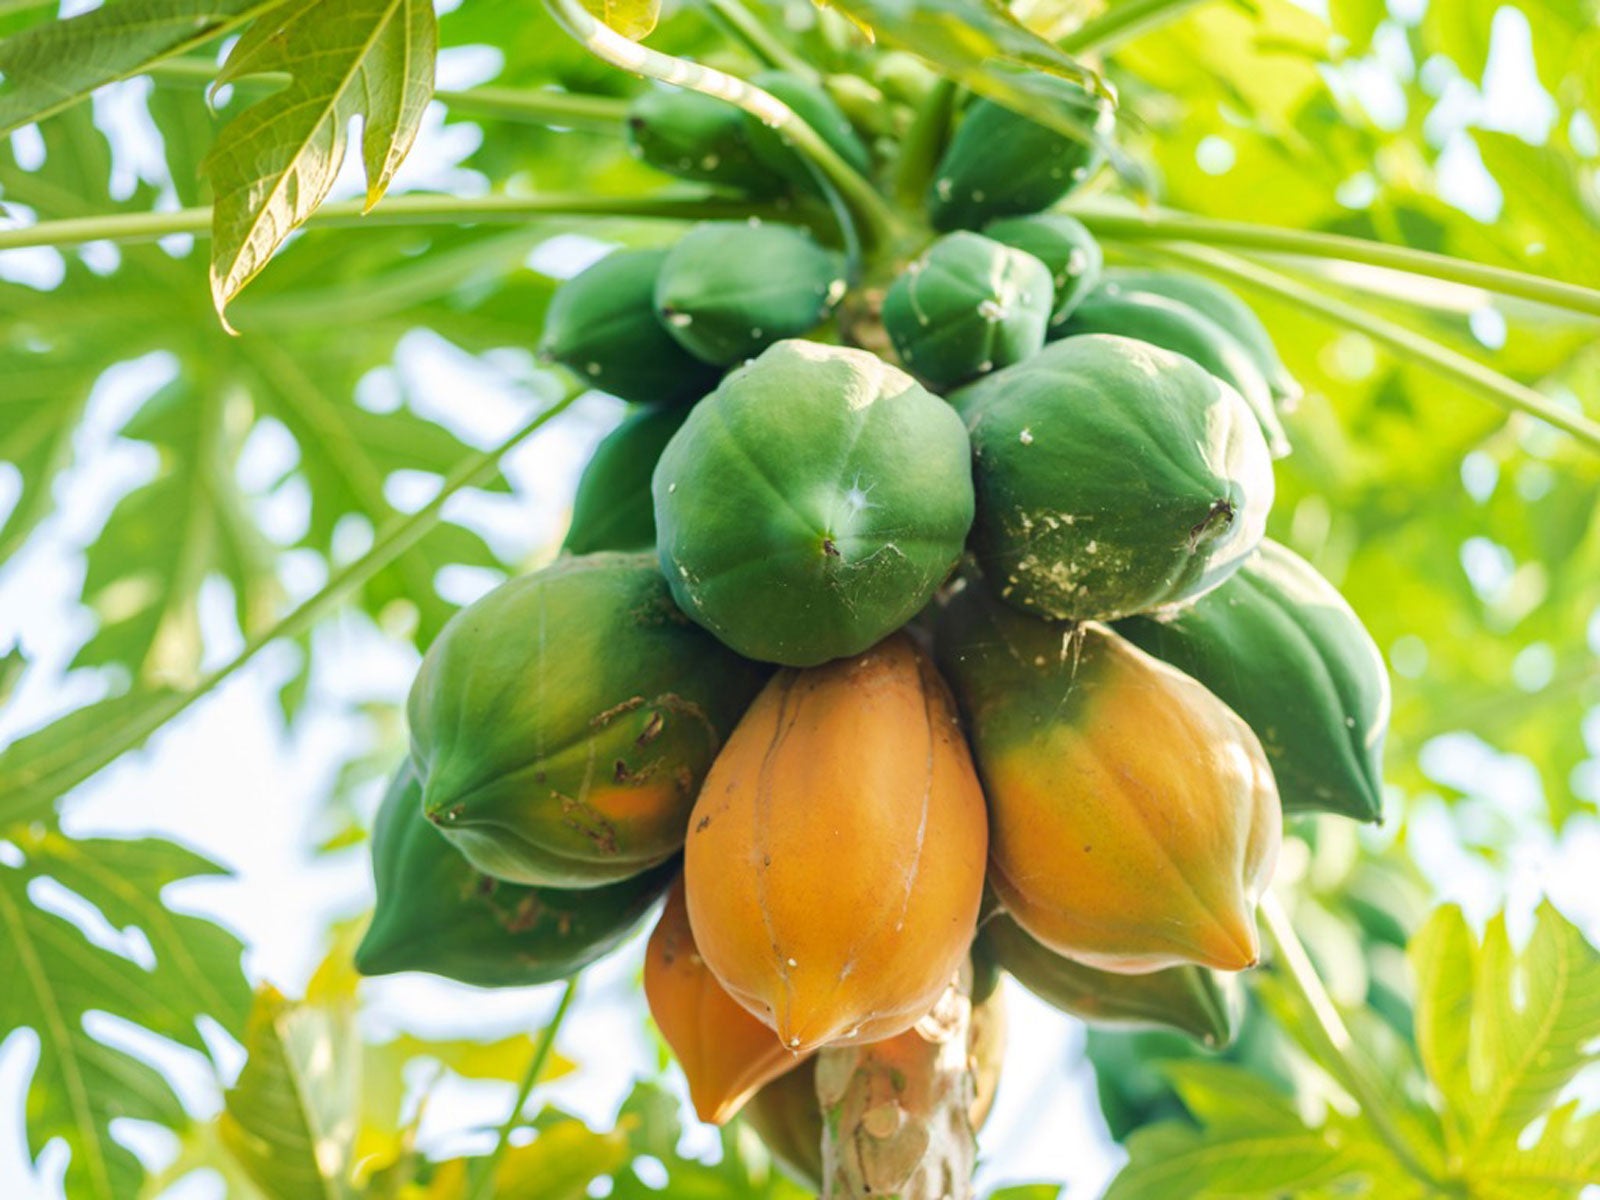 Papaya tree fruit harvesting